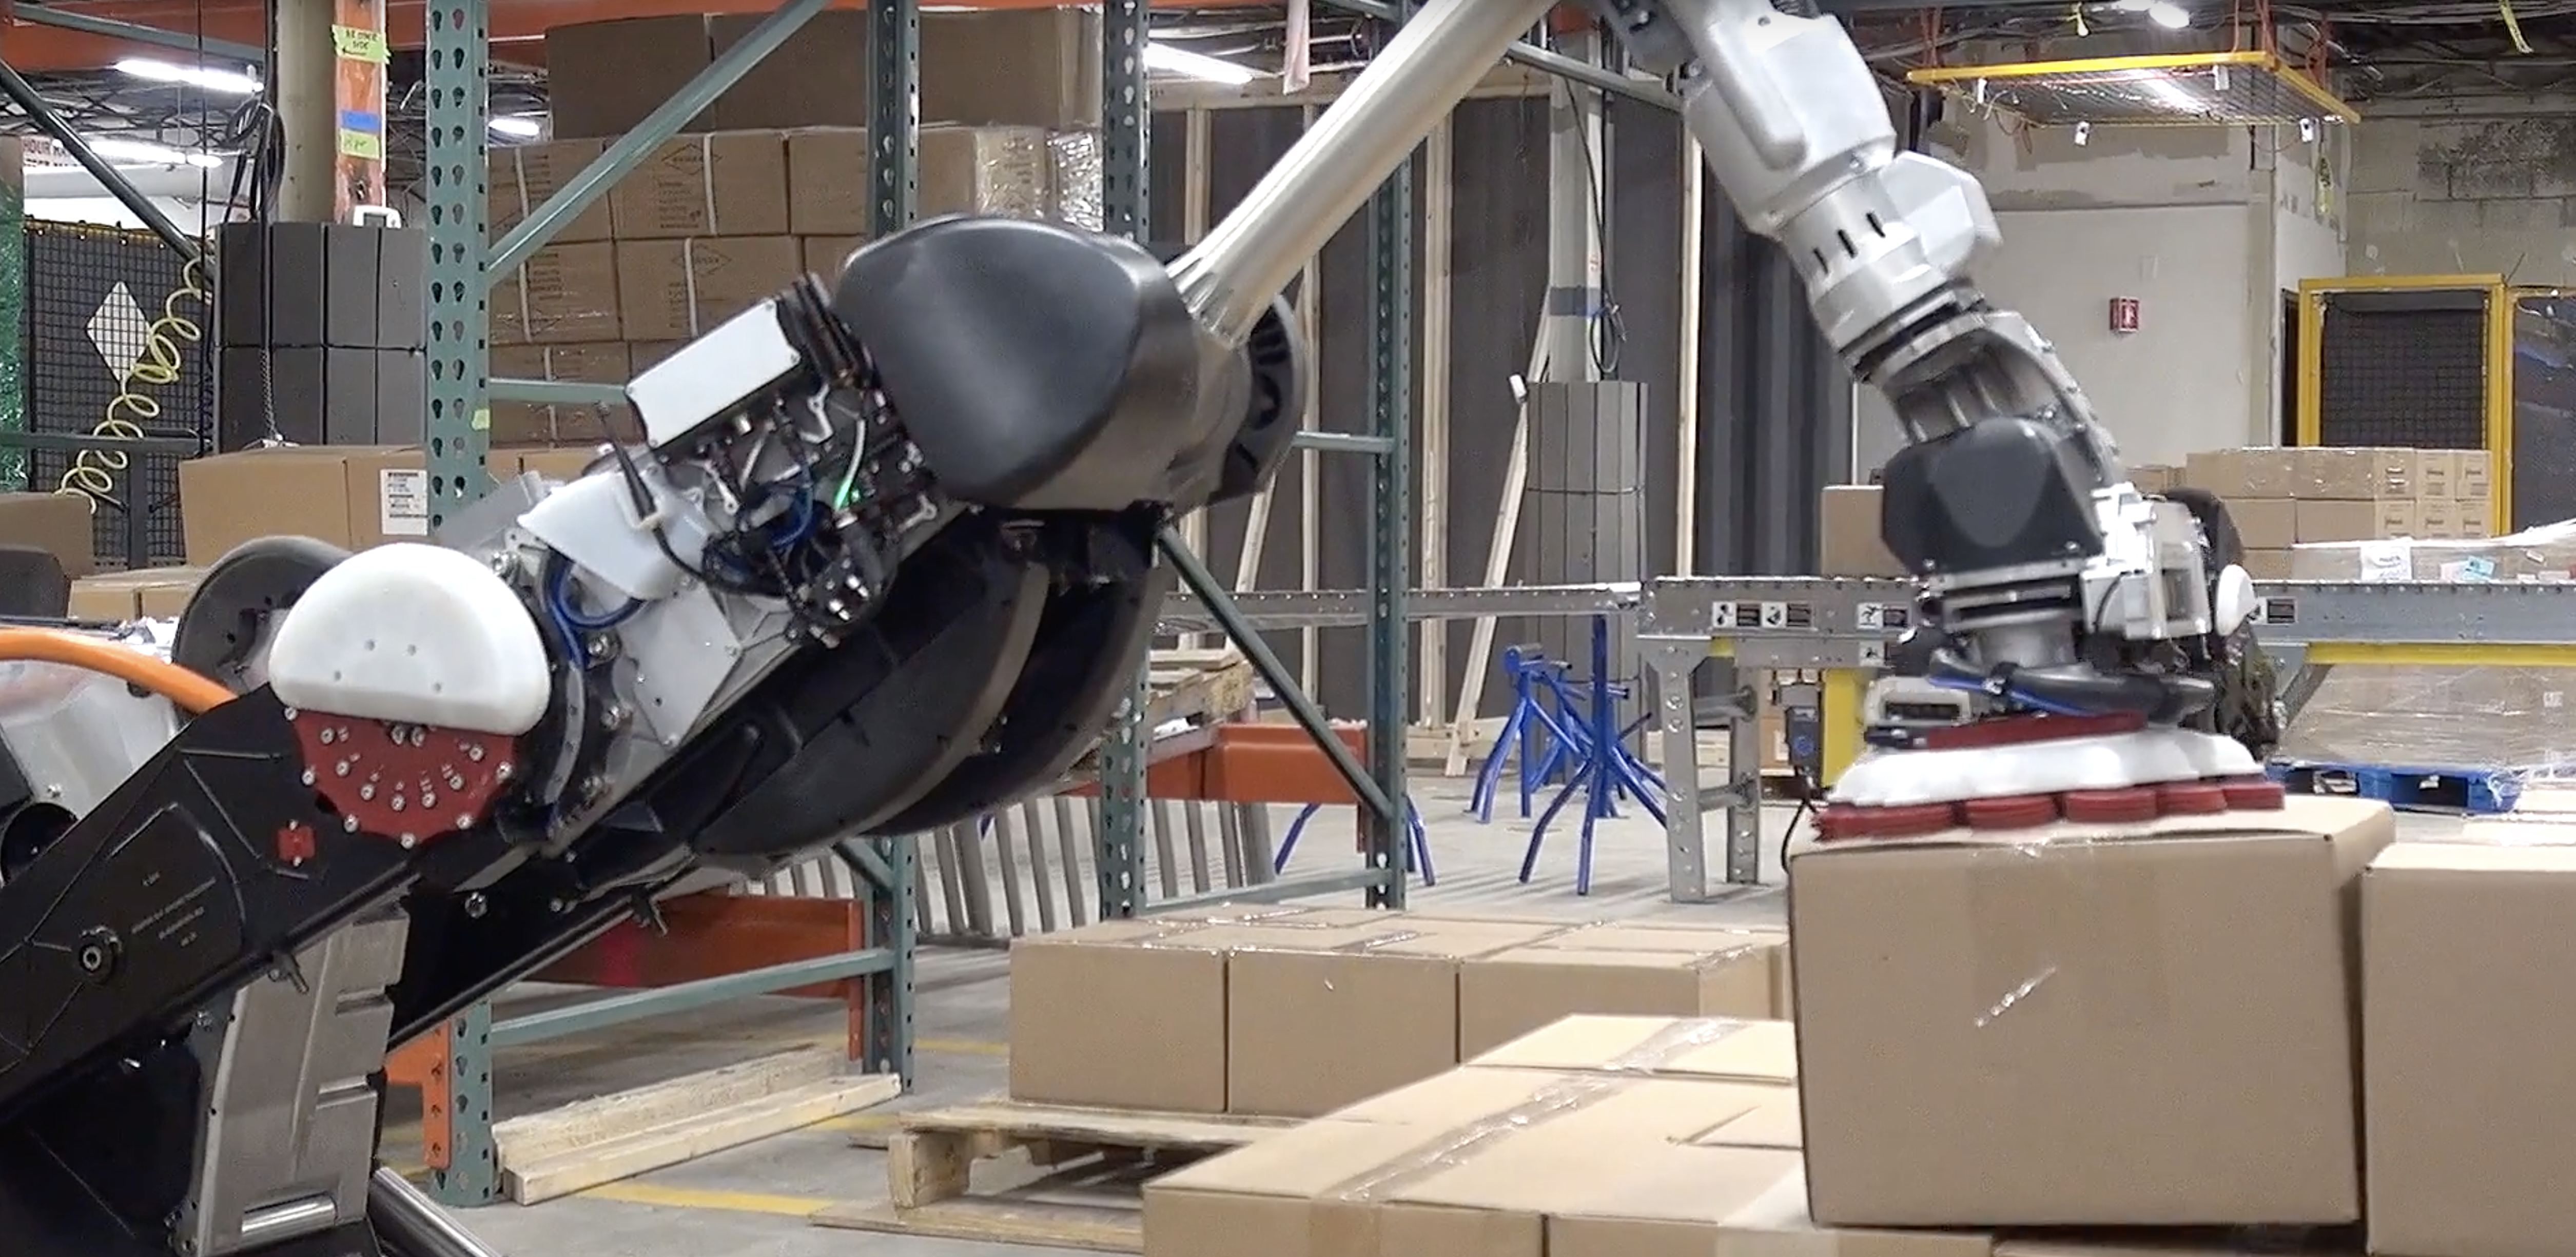 Двухколёсный робот Boston Dynamics переносит грузы захватом на присоске - 1